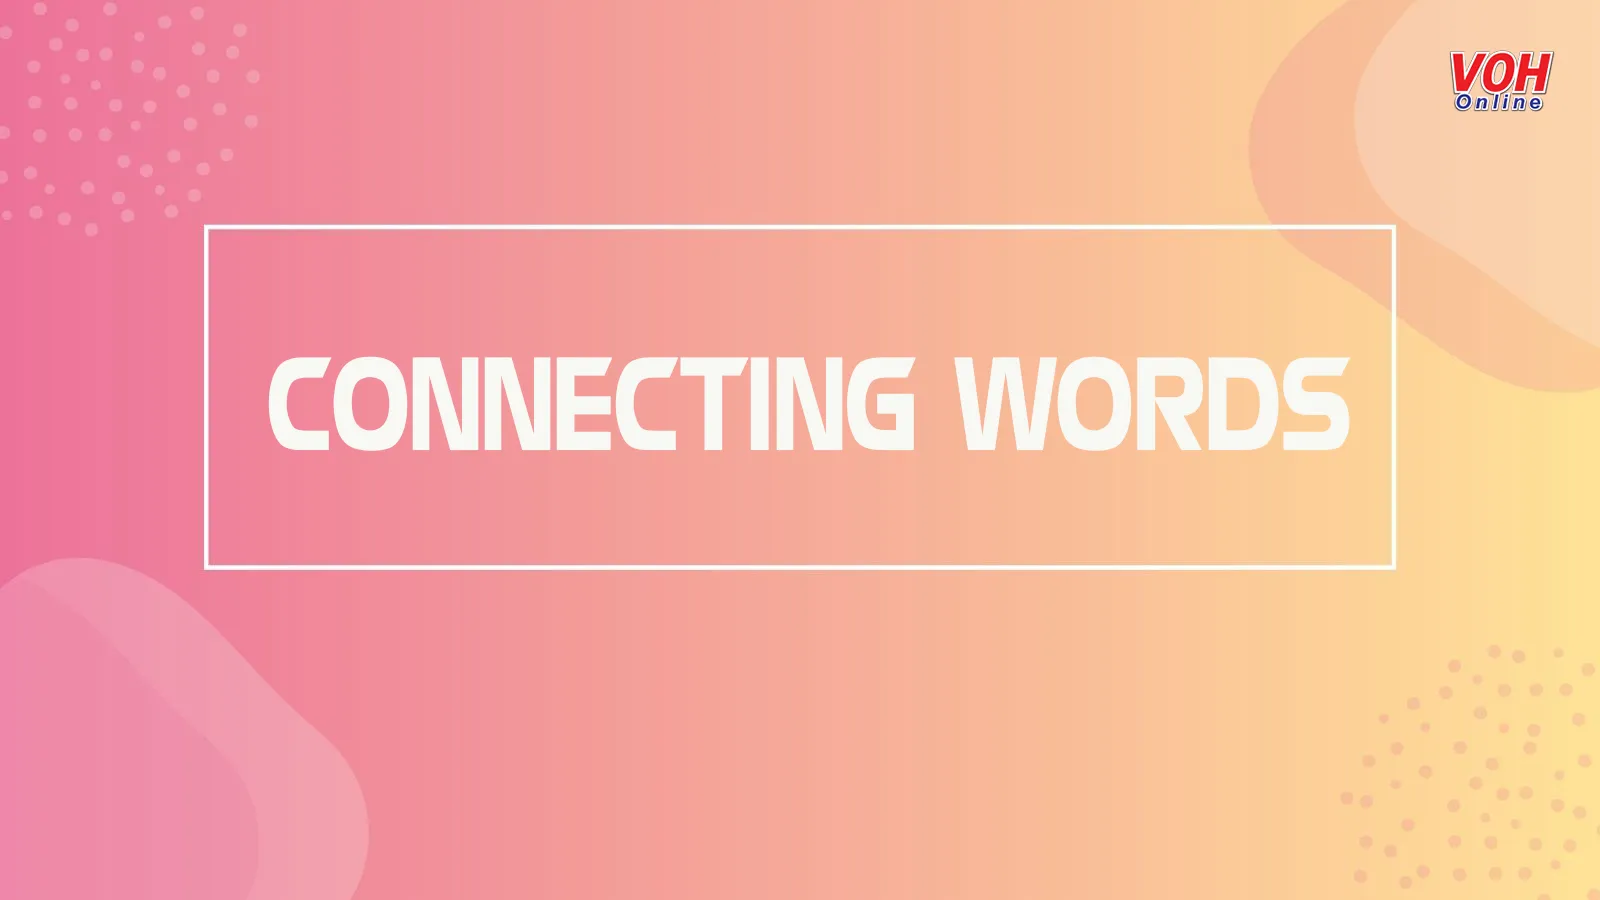 Tổng hợp các từ nối (connecting words) được sử dụng phổ biến trong tiếng Anh